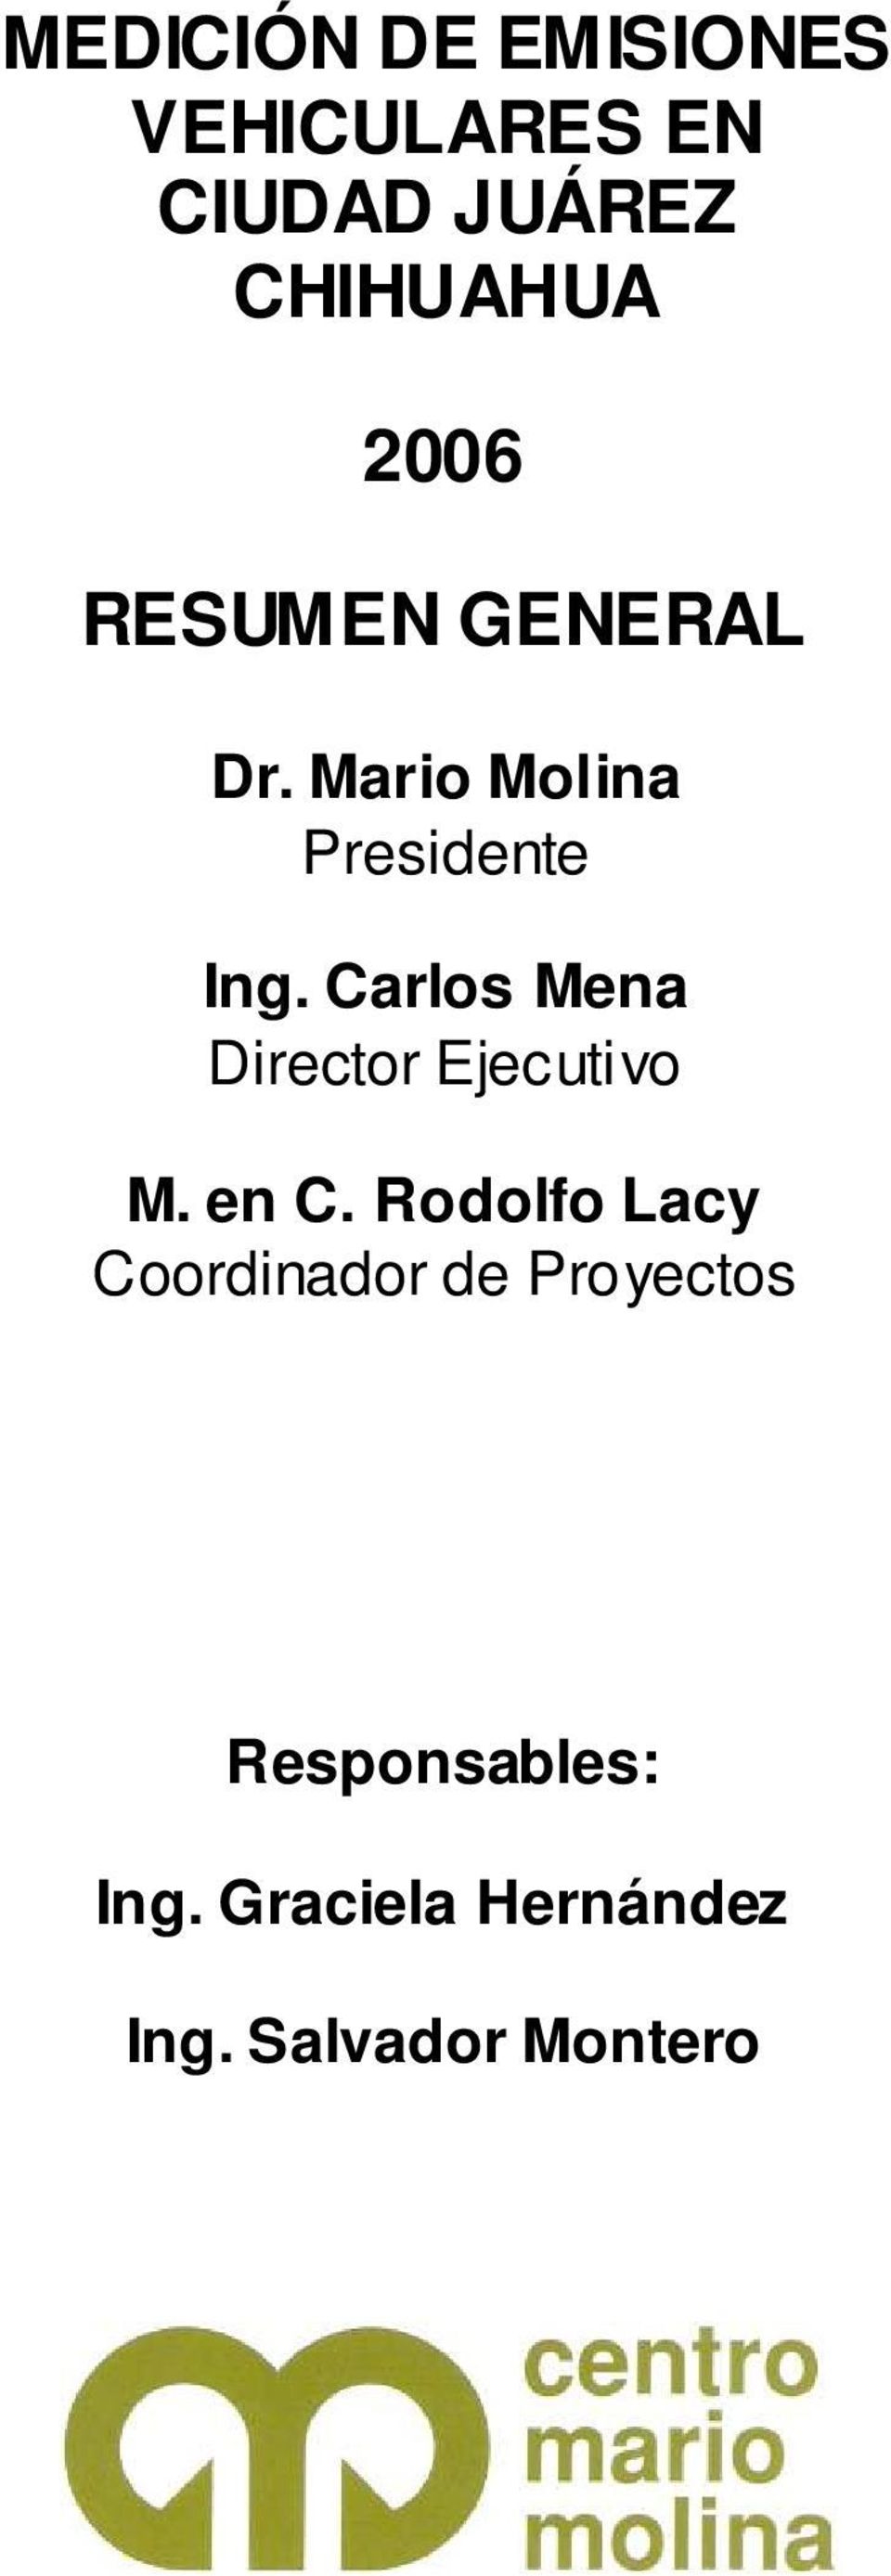 Carlos Mena Director Ejecutivo M. en C.